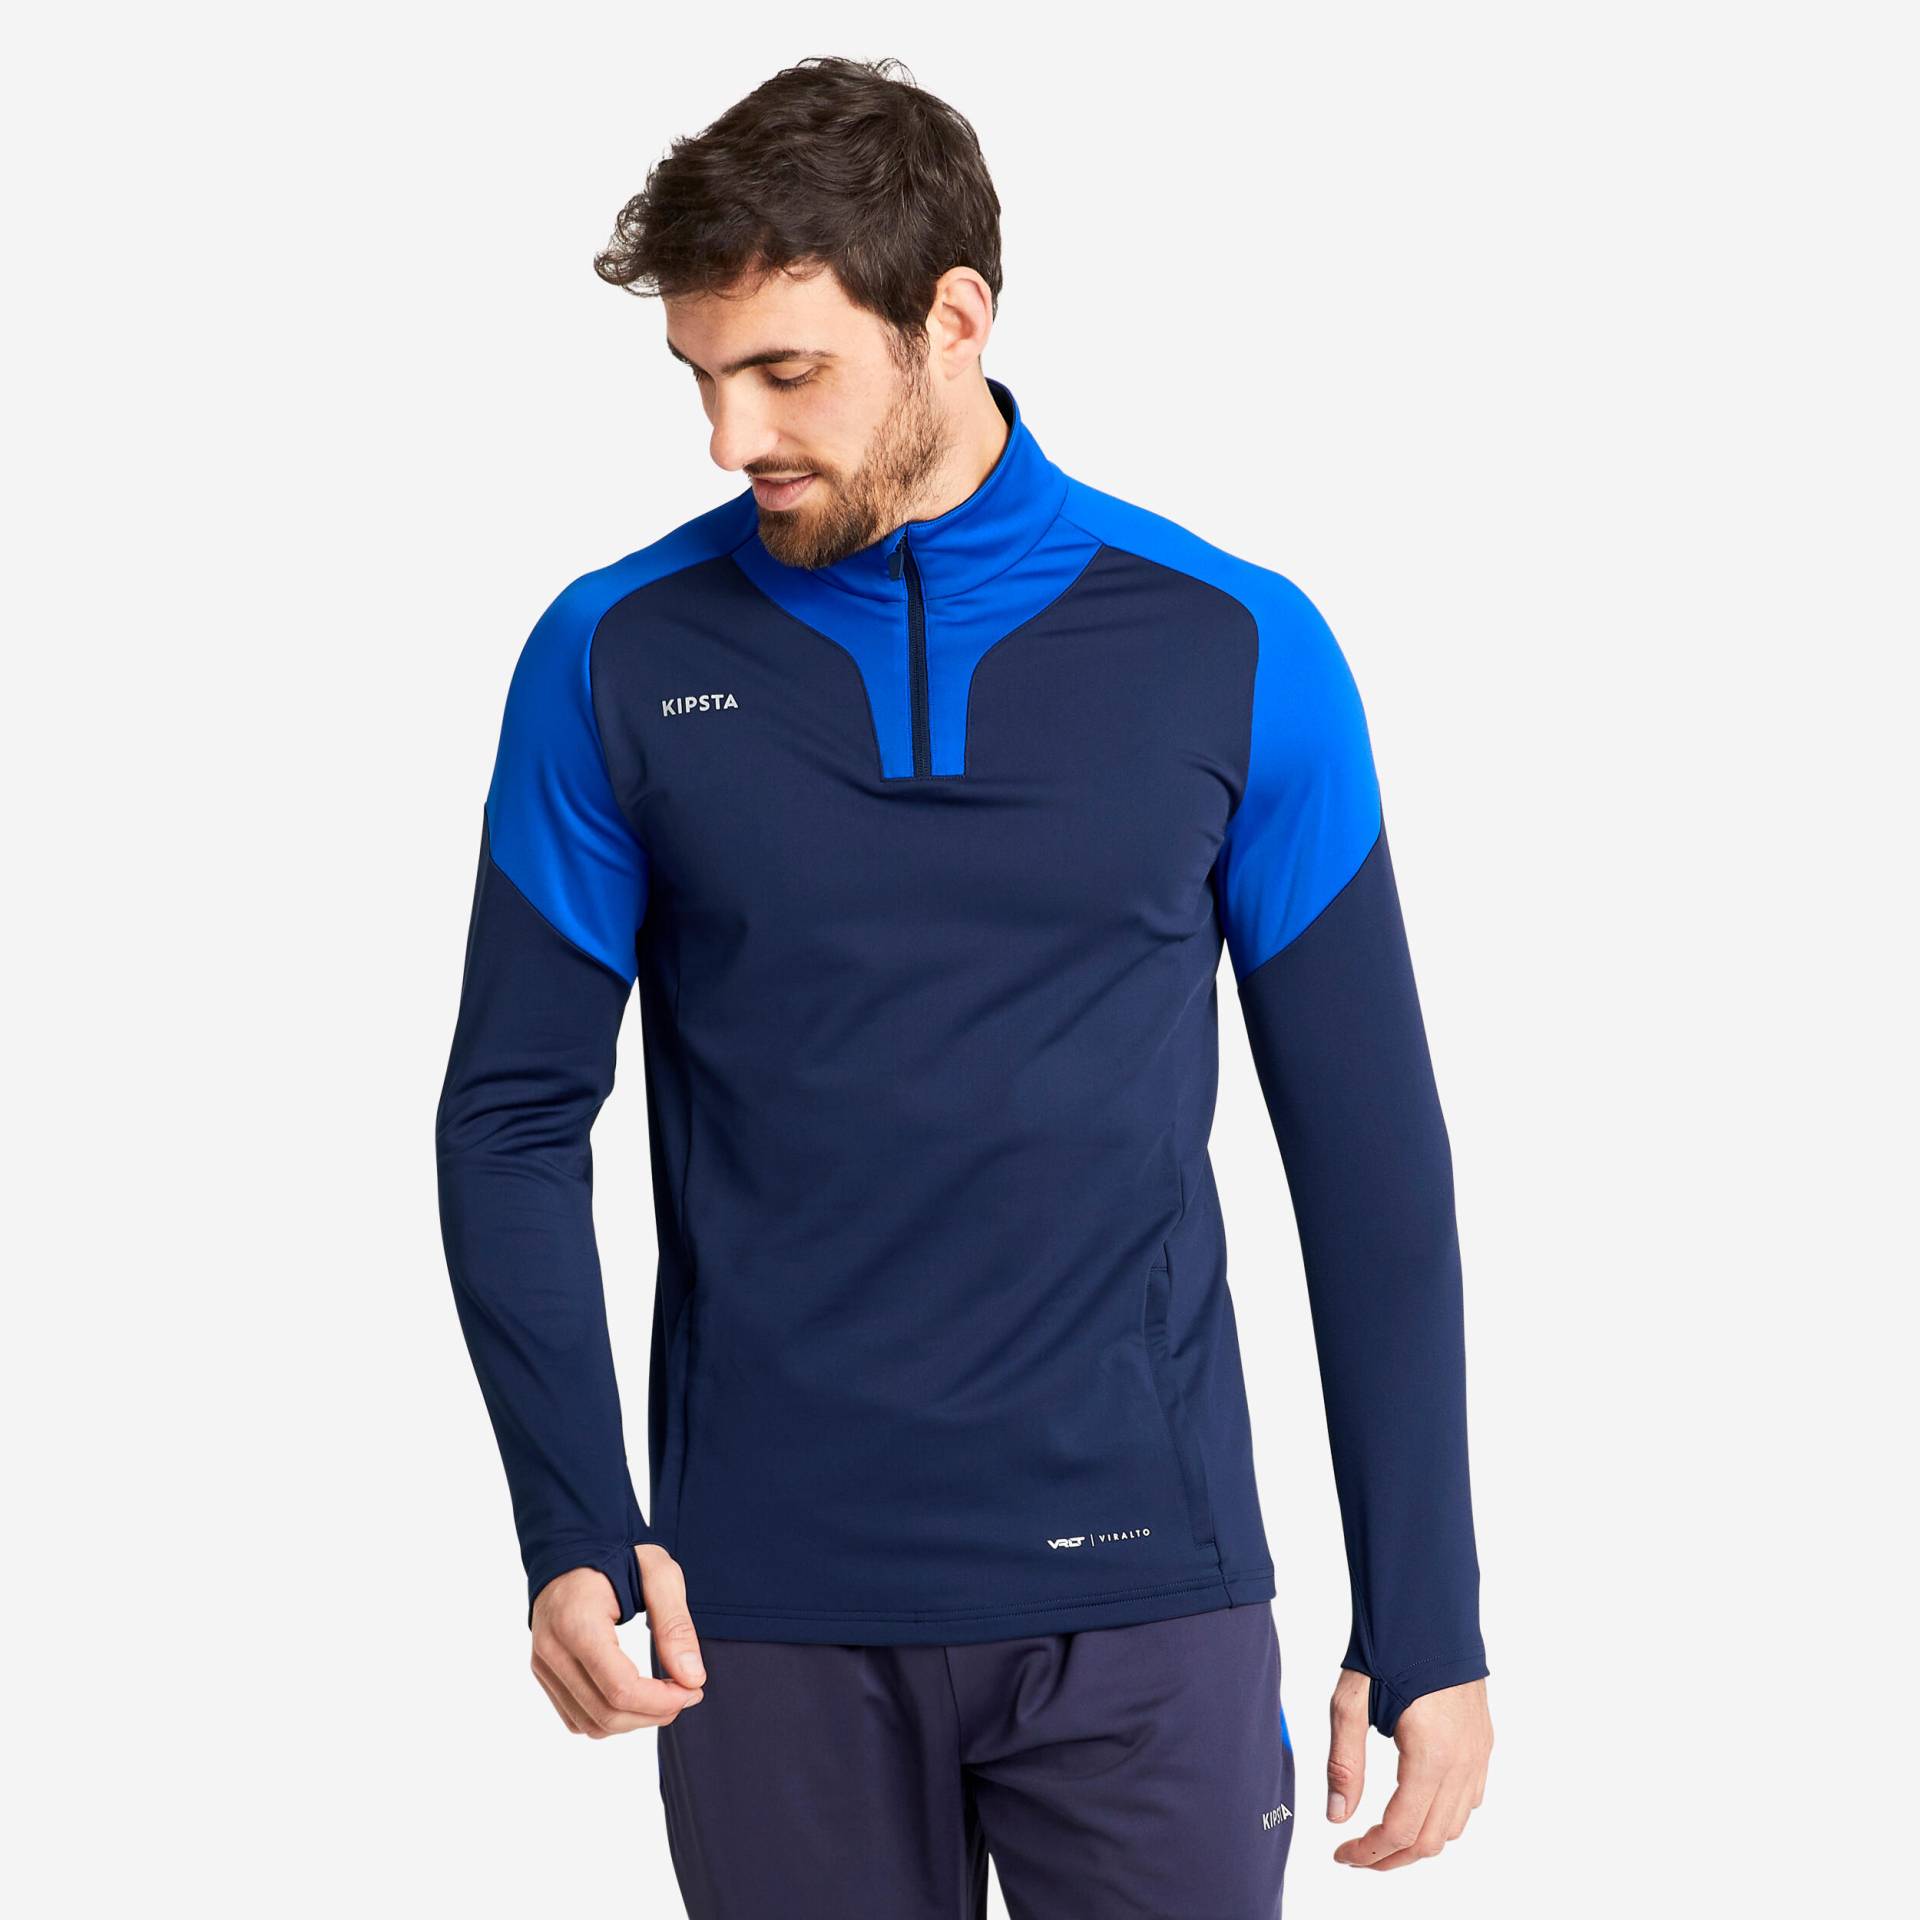 Damen/Herren Fussball Sweatshirt mit Reissverschluss - Viralto marineblau/blau von KIPSTA